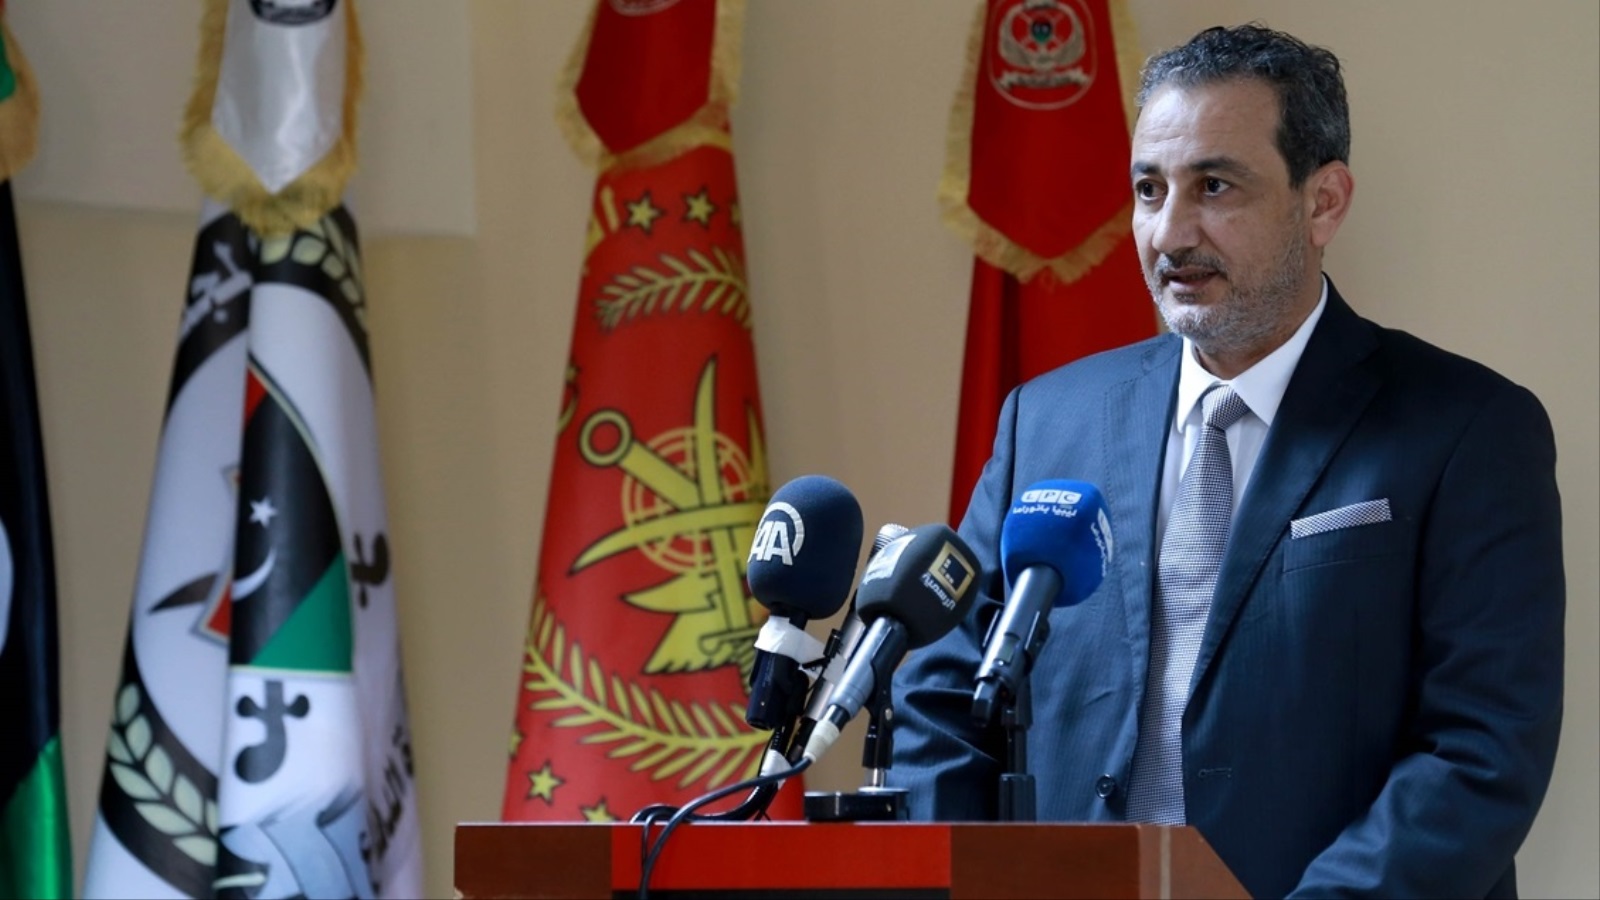 ‪وزير الدفاع بحكومة الوفاق في ليبيا أوقف عن العمل بسبب هجوم على قاعدة عسكرية جوية جنوبي البلاد‬ (الأناضول)